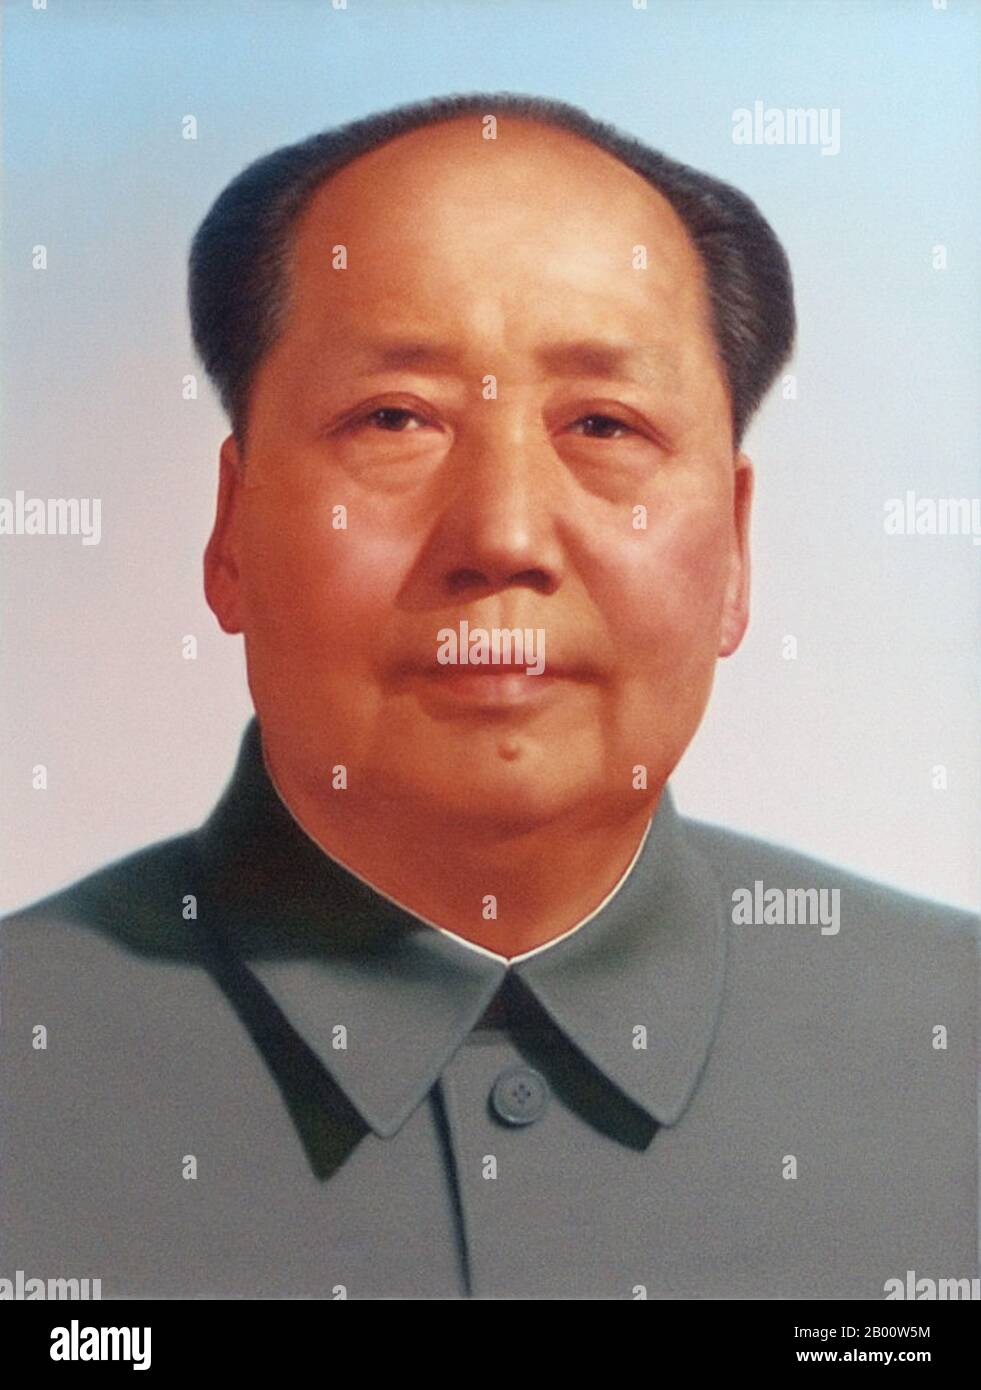 Cina: Ritratto ufficiale di Mao Zedong alla porta di Tiananmen, Pechino. Mao Zedong, anch'esso traslitterato come Mao TSE-Tung (26 dicembre 1893 – 9 settembre 1976), è stato un rivoluzionario comunista cinese, stratega della guerriglia, autore, teorico politico e leader della Rivoluzione cinese. Comunemente indicato come presidente Mao, è stato l'architetto della Repubblica popolare Cinese (PRC) dalla sua fondazione nel 1949, e ha mantenuto il controllo autoritario sulla nazione fino alla sua morte nel 1976. Foto Stock